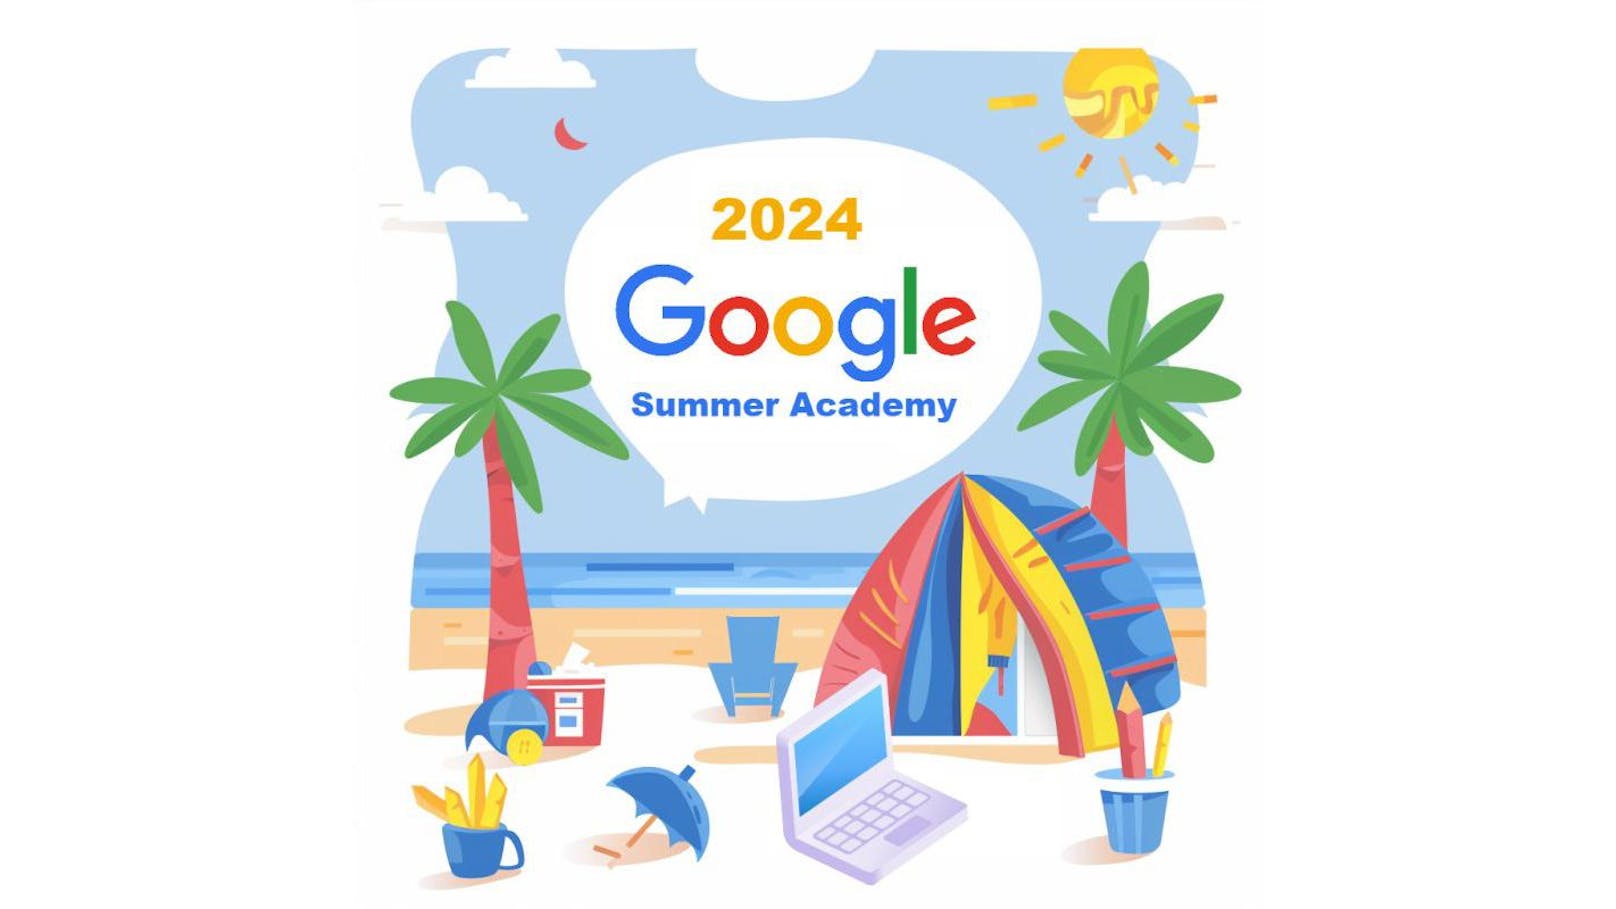 Google Summer Academy 2024 mit kostenlosen KI-Kursen